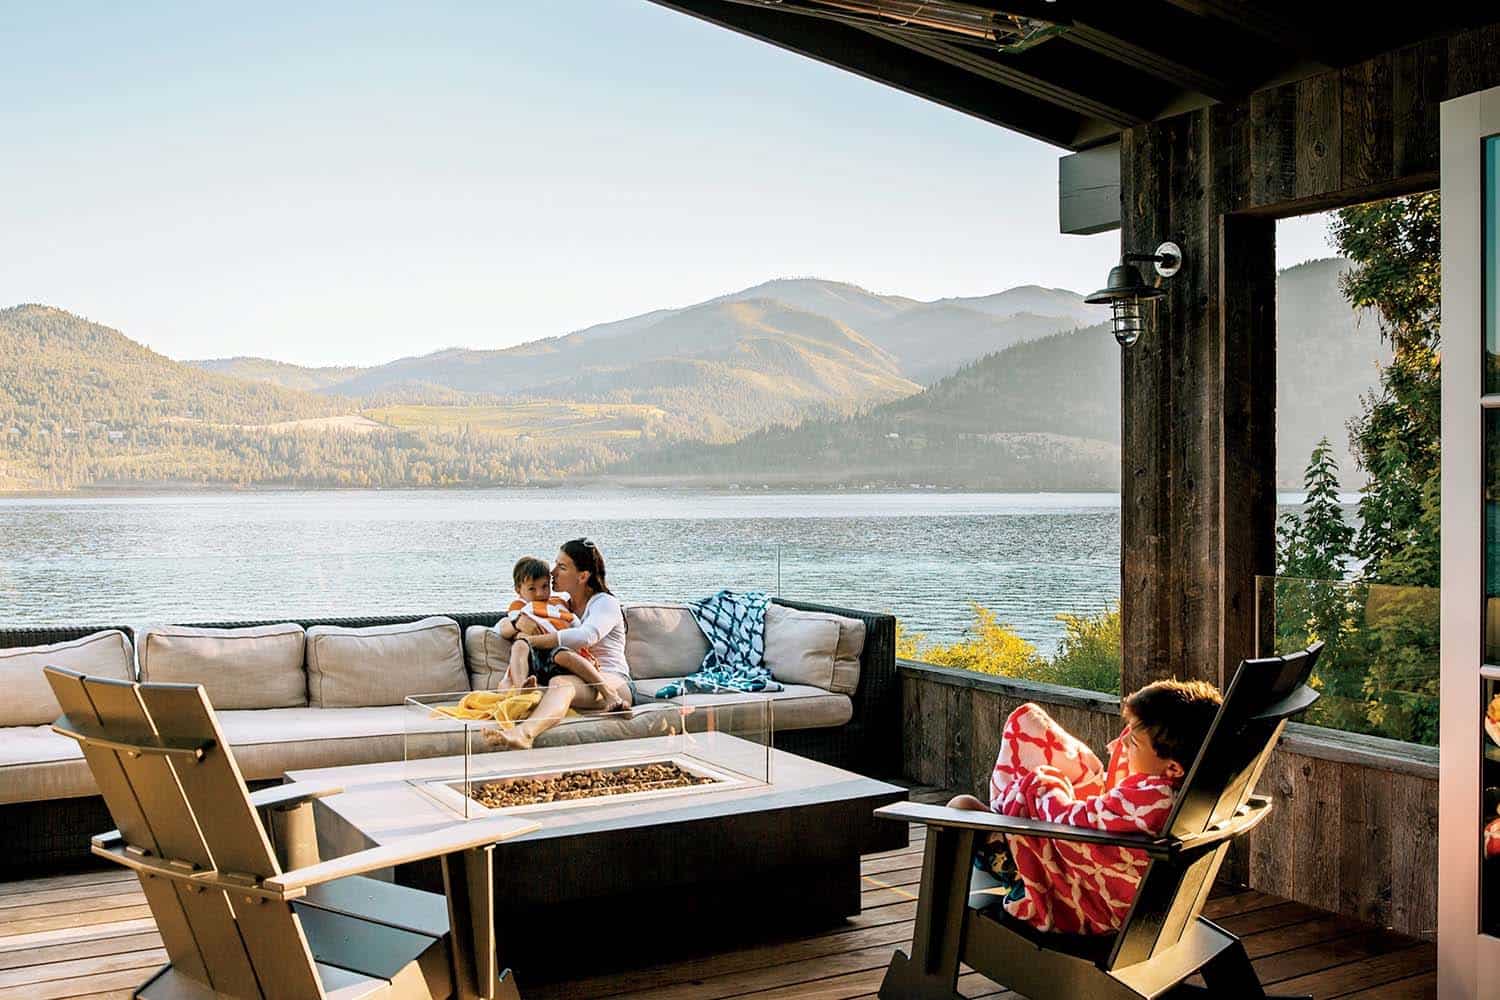 A modern family hideaway along Lake Chelan, Washington